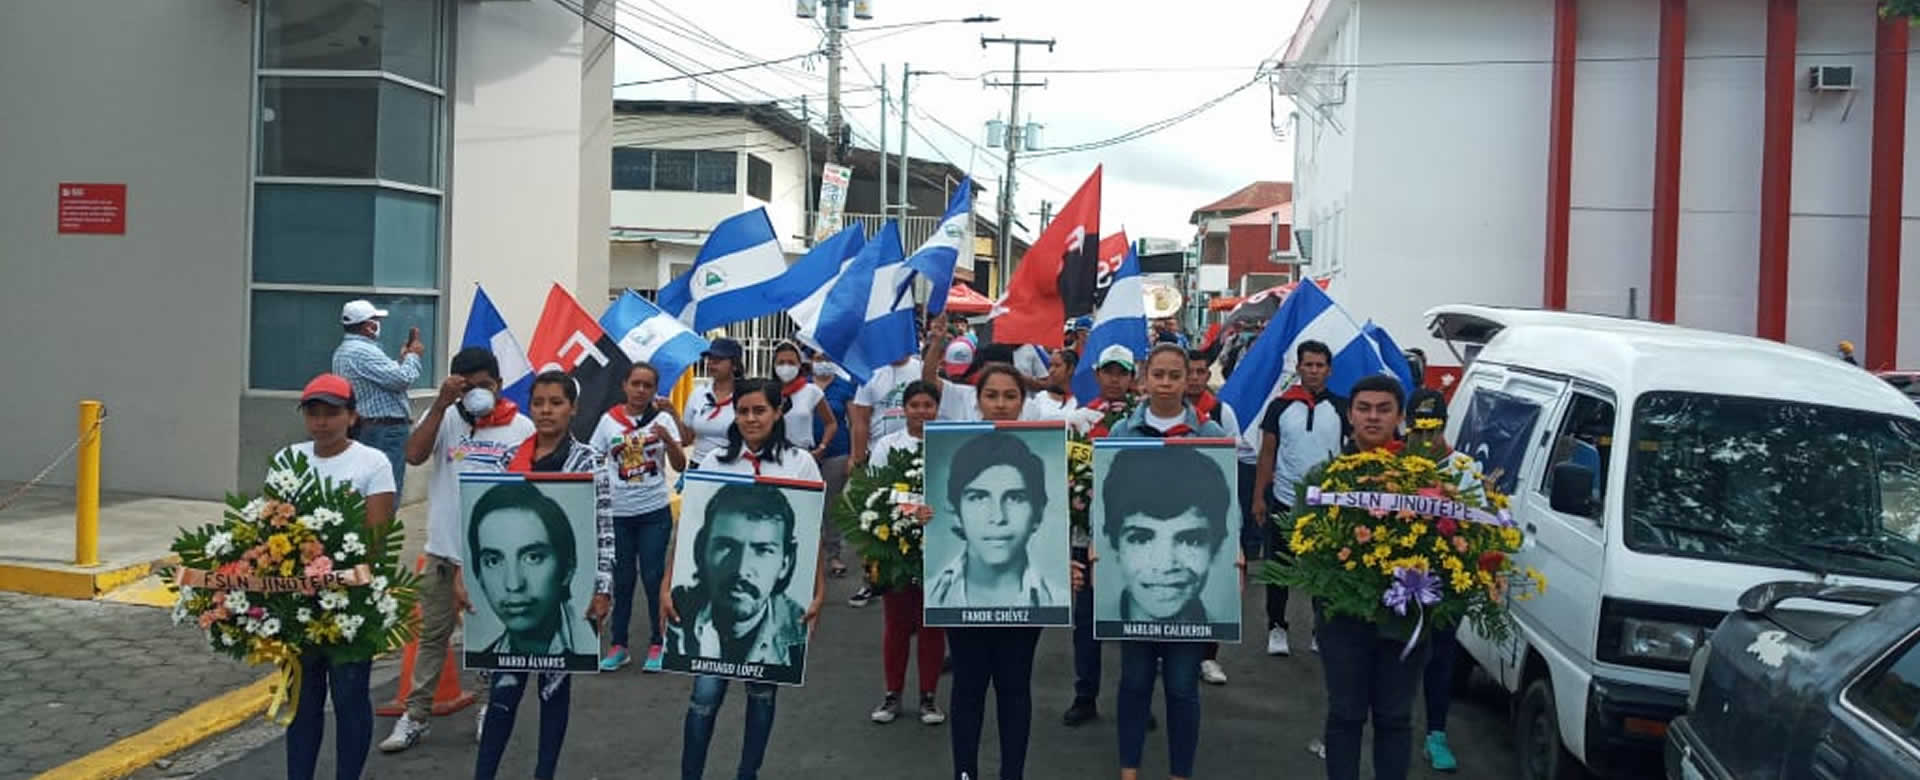 Jinotepe conmemora el 42 aniversario de la masacre estudiantil de 1978